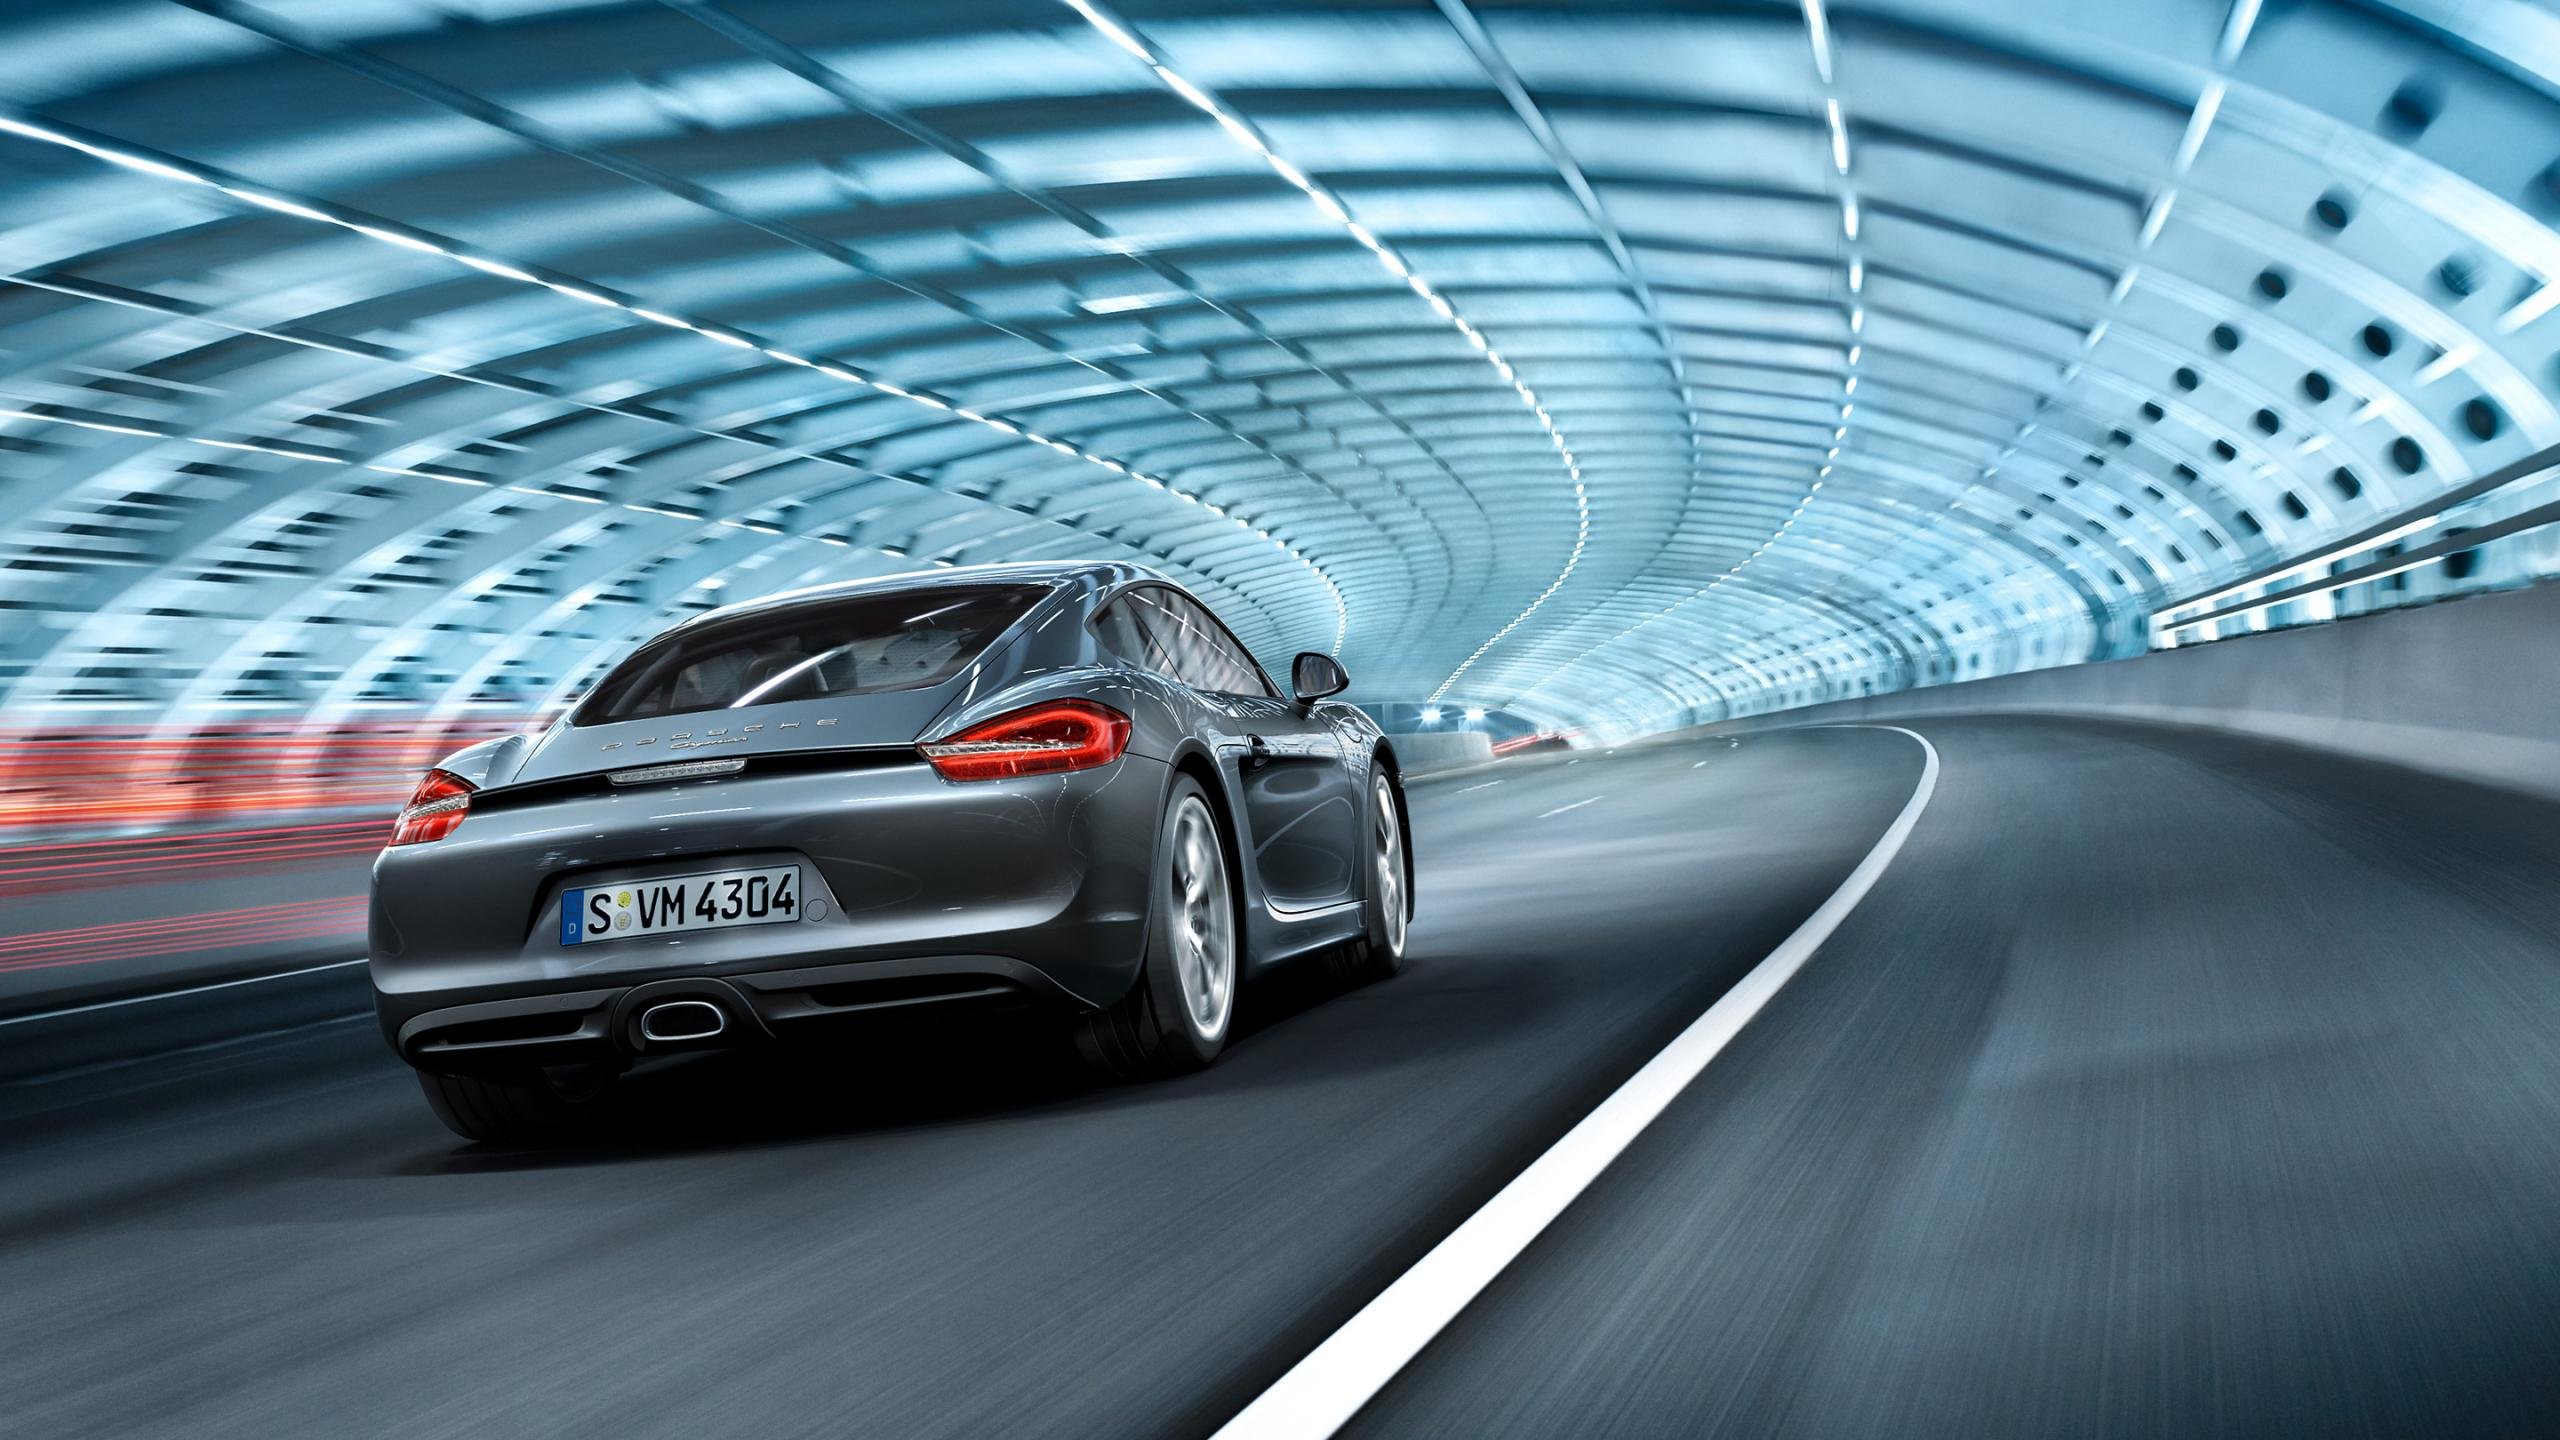 Best Porsche Cayman background ID:322464 for High Resolution hd 2560x1440 desktop